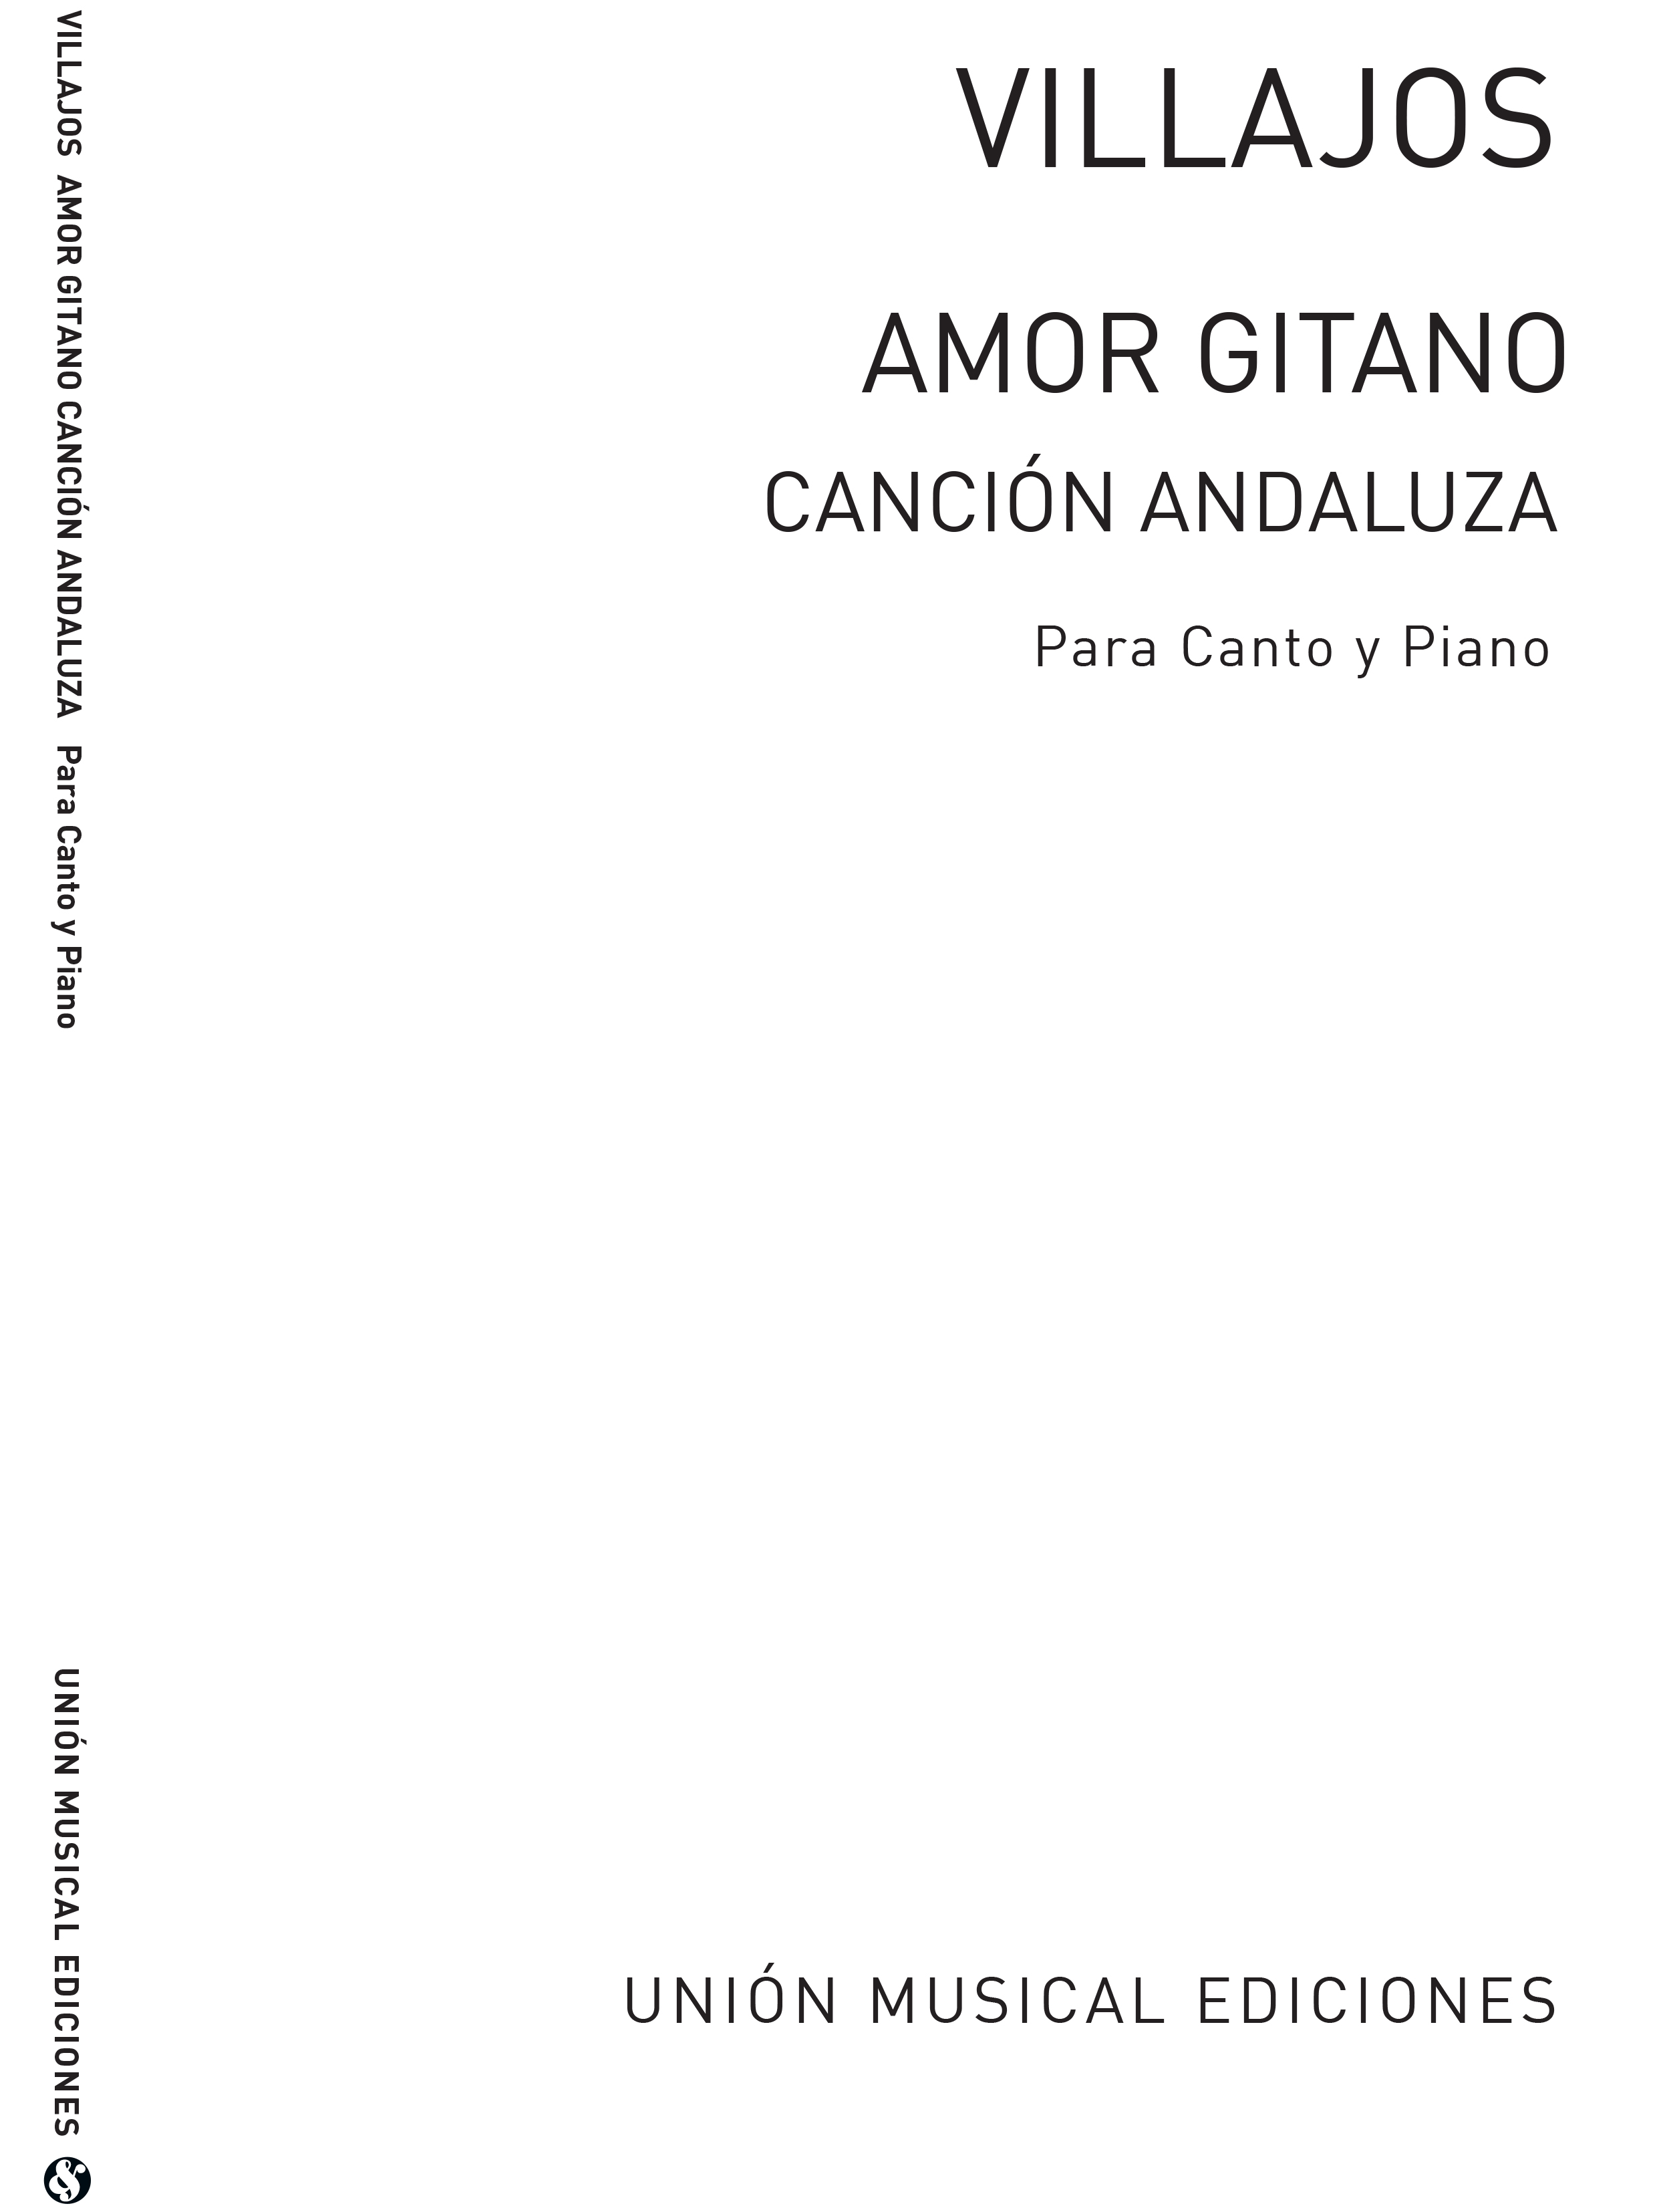 Angel Ortiz De Villajos: Ortiz de Villajos: Amor Gitano for Voice and Piano: